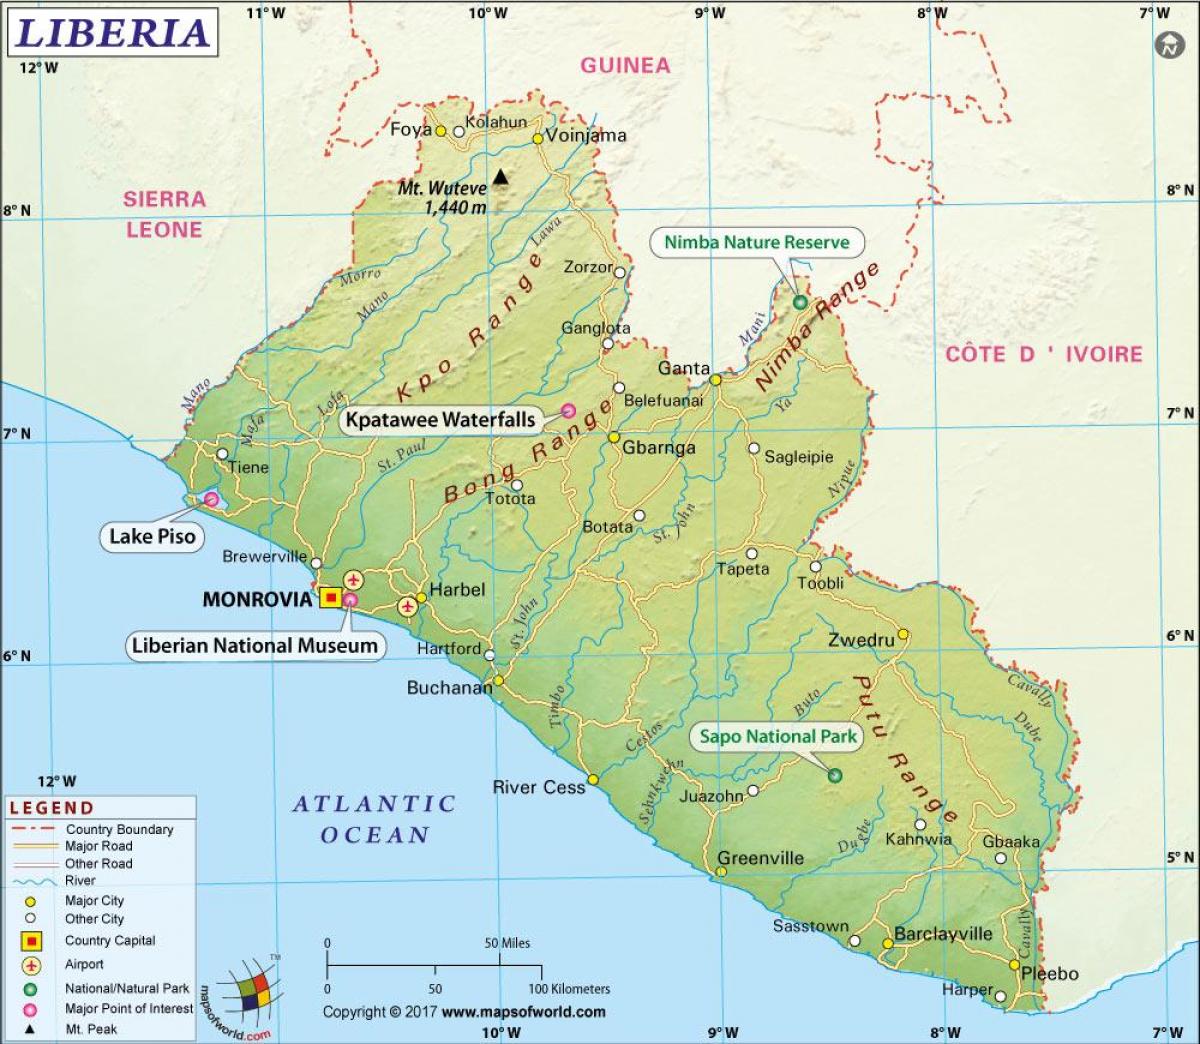 ο χάρτης της Λιβερίας